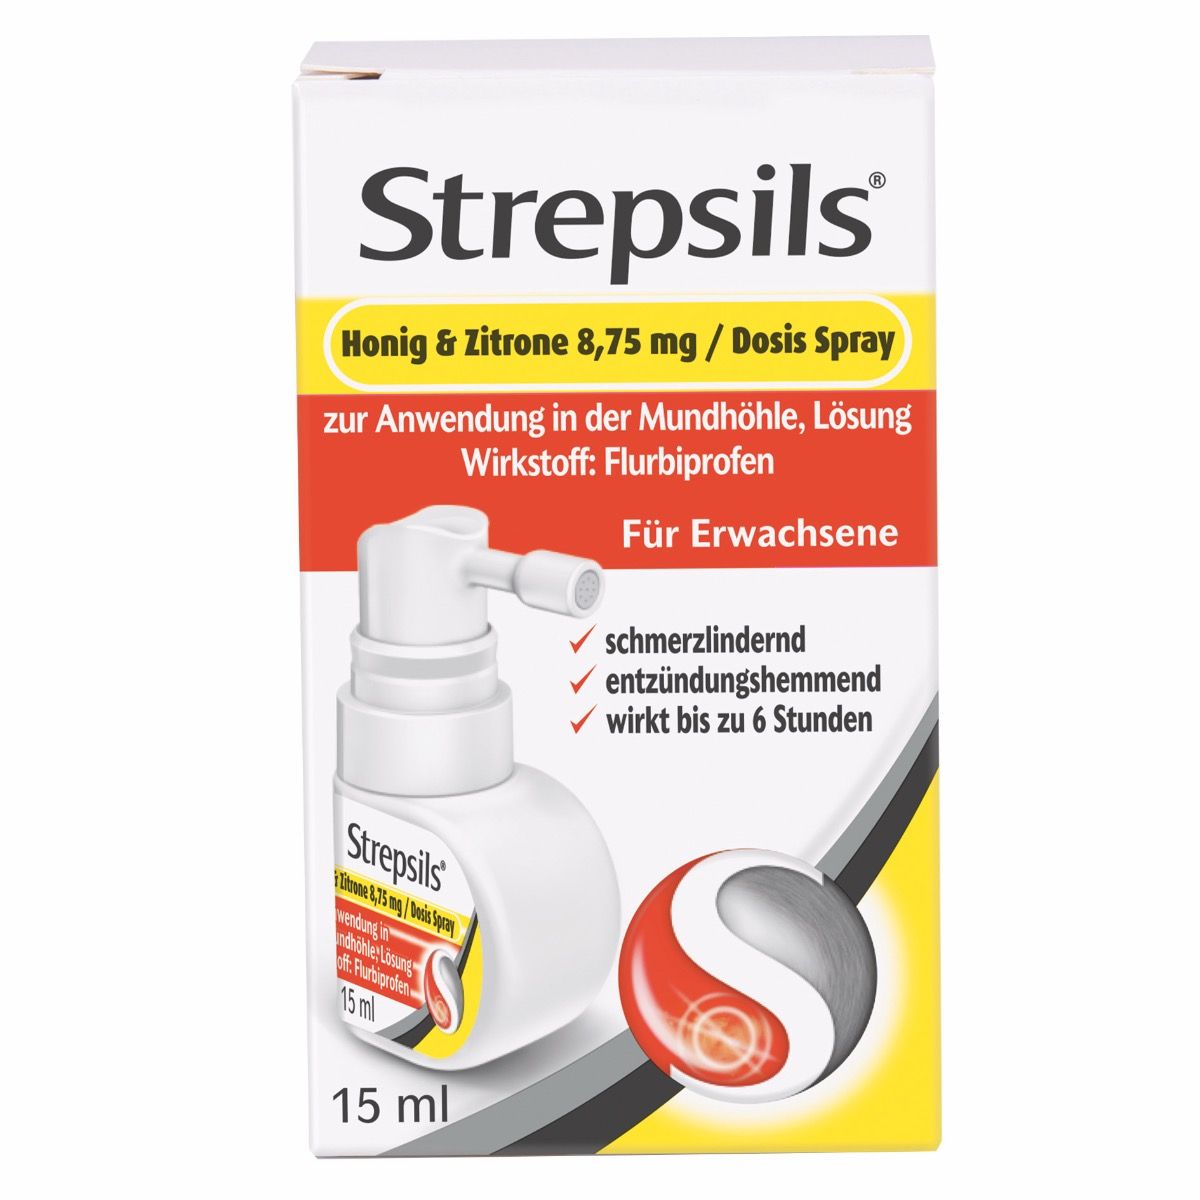 Abbildung Strepsils Honig & Zitrone 8,75 mg/Dosis Spray zur Anwendung in der Mundhöhle, Lösung